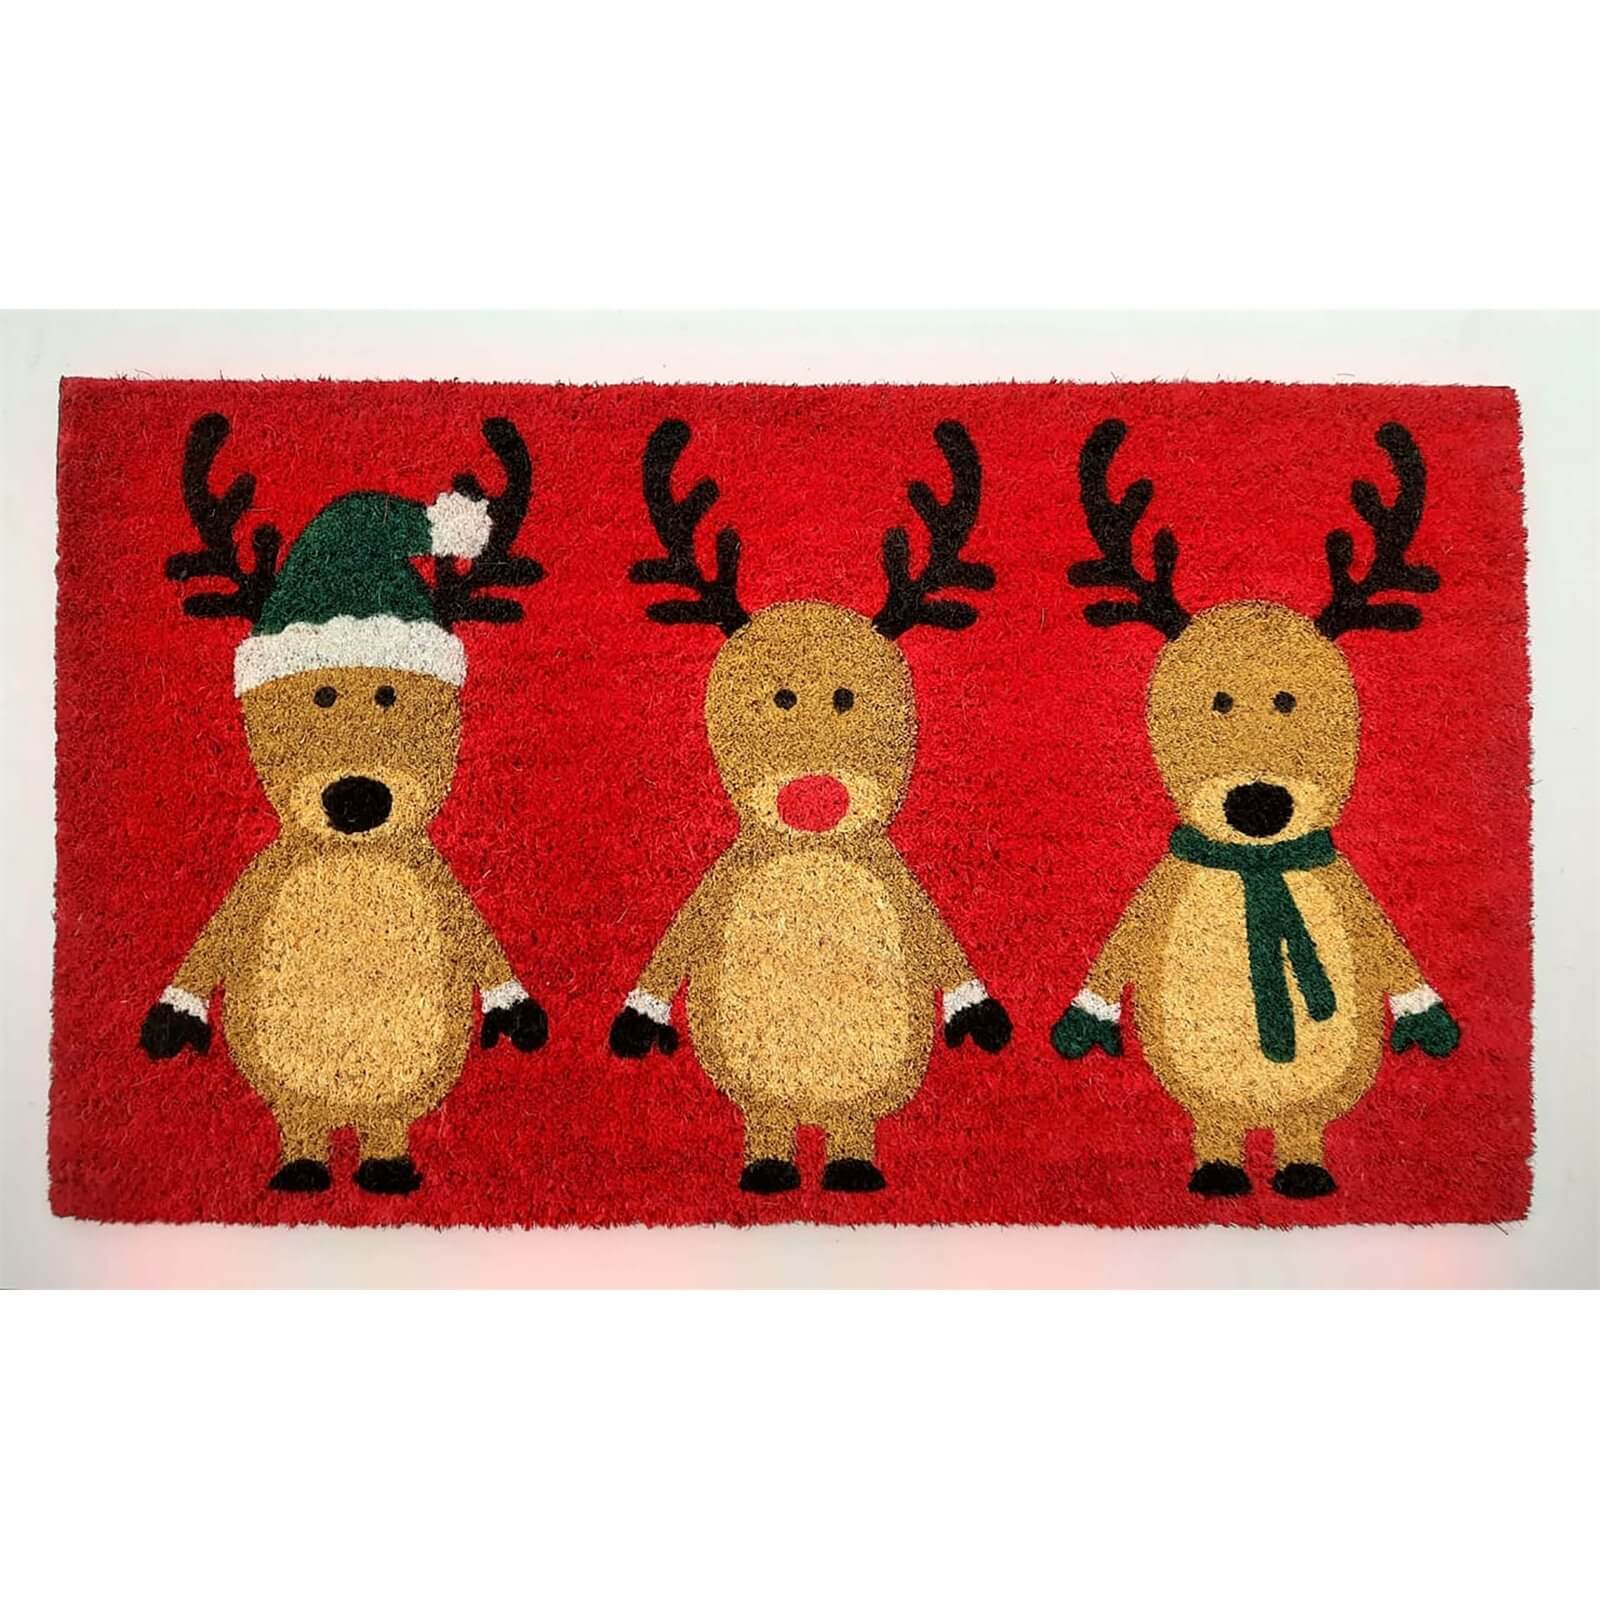 Three Reindeers Doormat